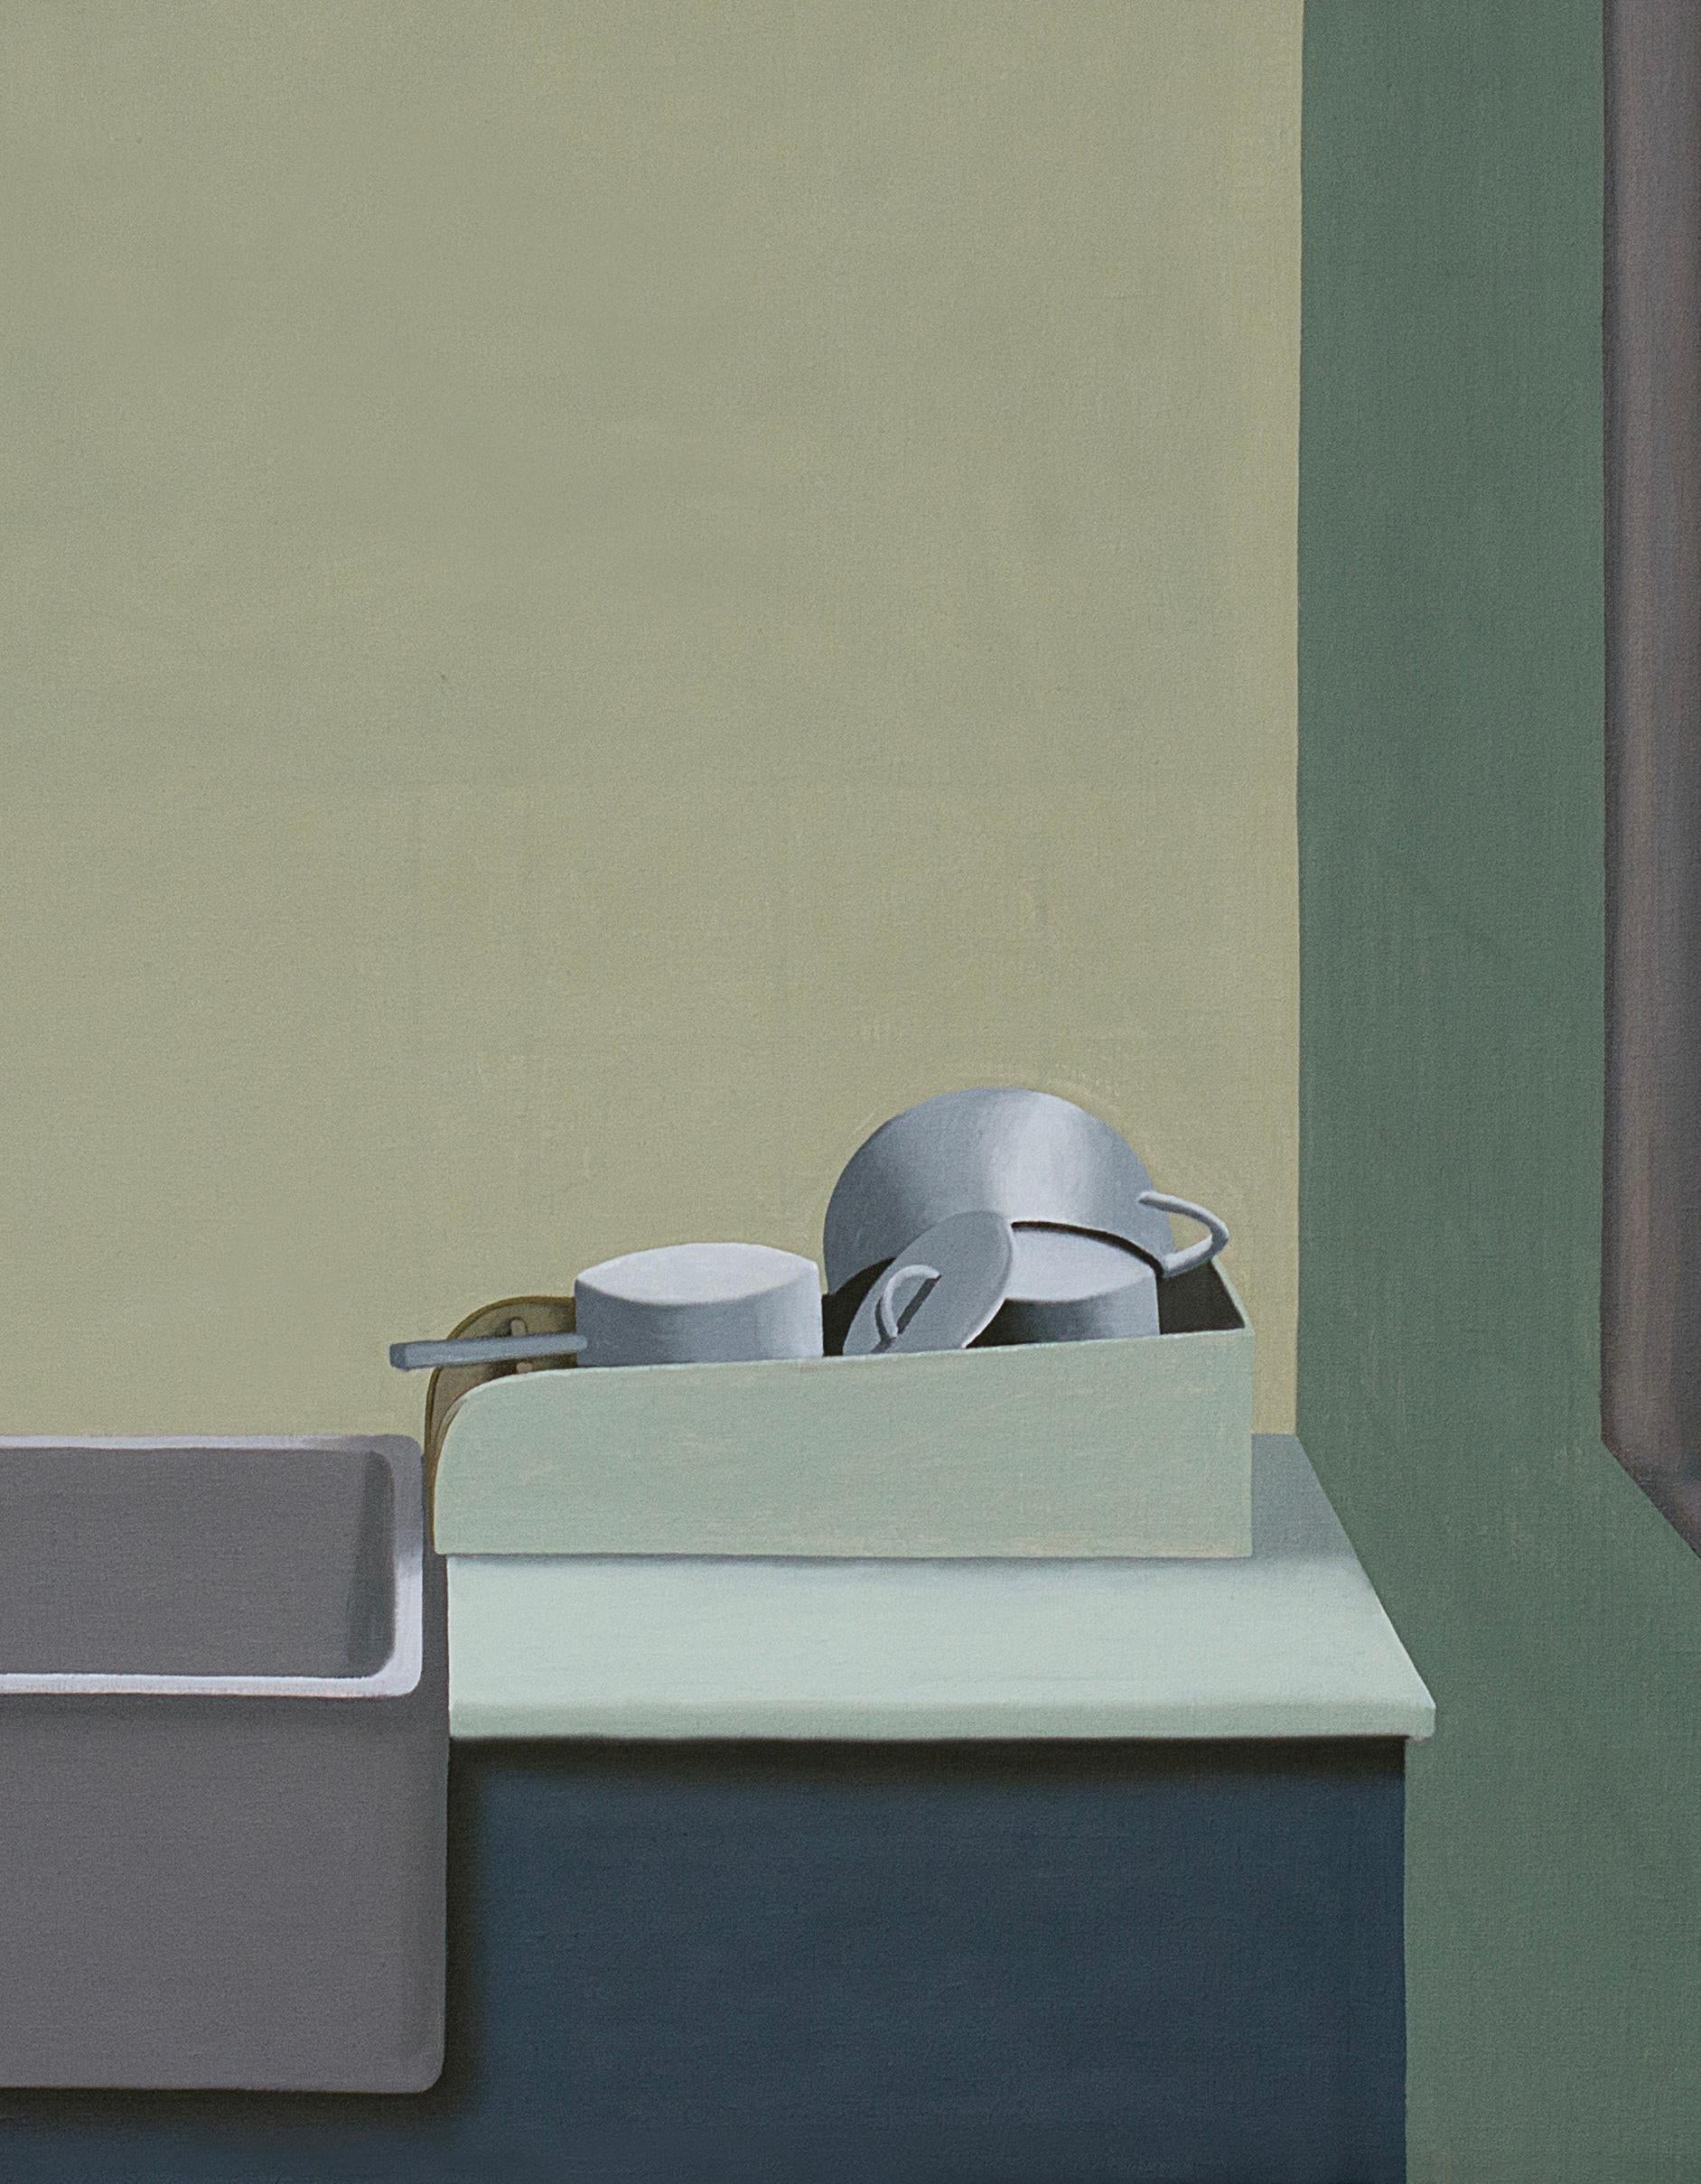 Dieses schöne Gemälde von Jeroen Allart ist Teil seiner minimalistischen Landschafts- und Innenraummalerei, die er in seinem Heimatland, den Niederlanden, geschaffen hat.
ein Bauernhof steht vor Ihnen am Horizont. Eine Windmühle durchschneidet